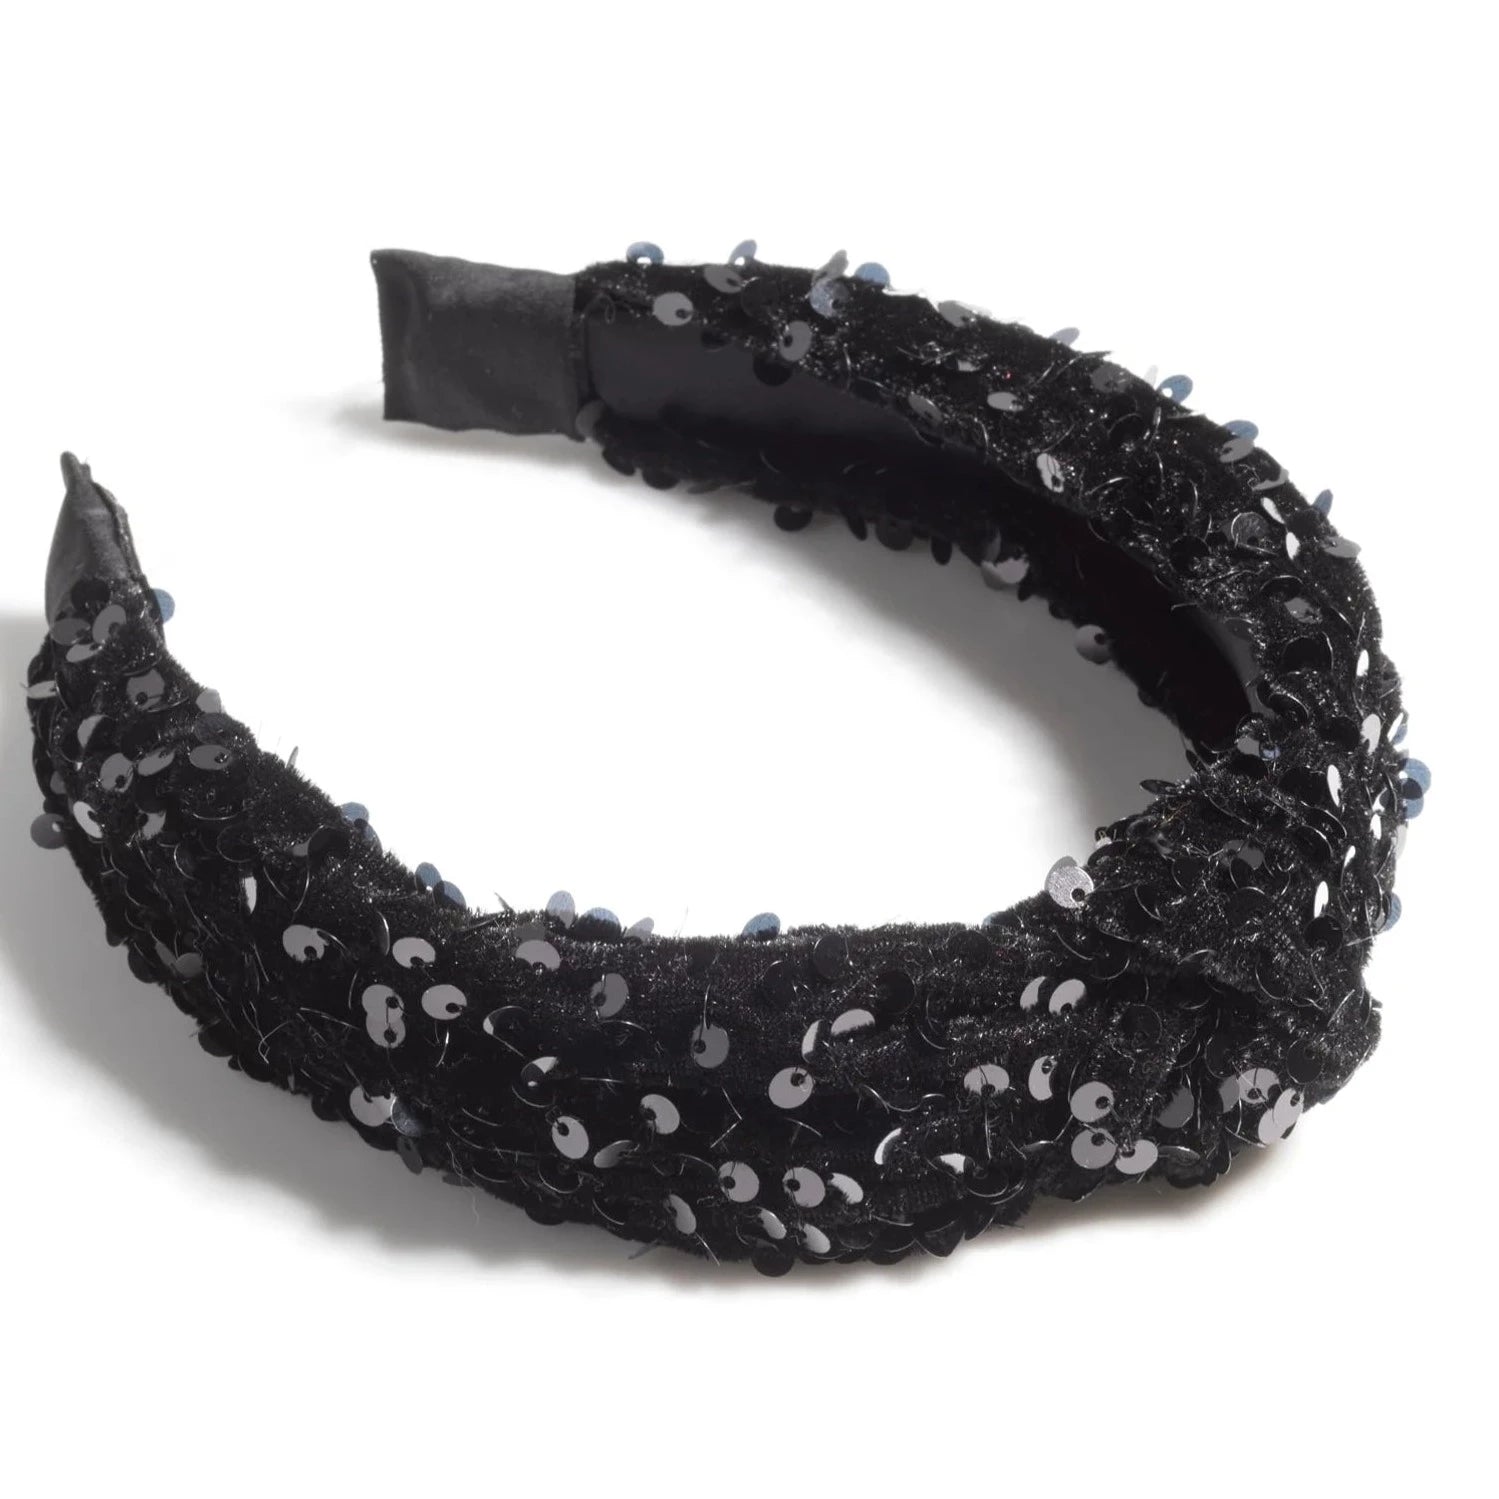 Black Sparkle Headband